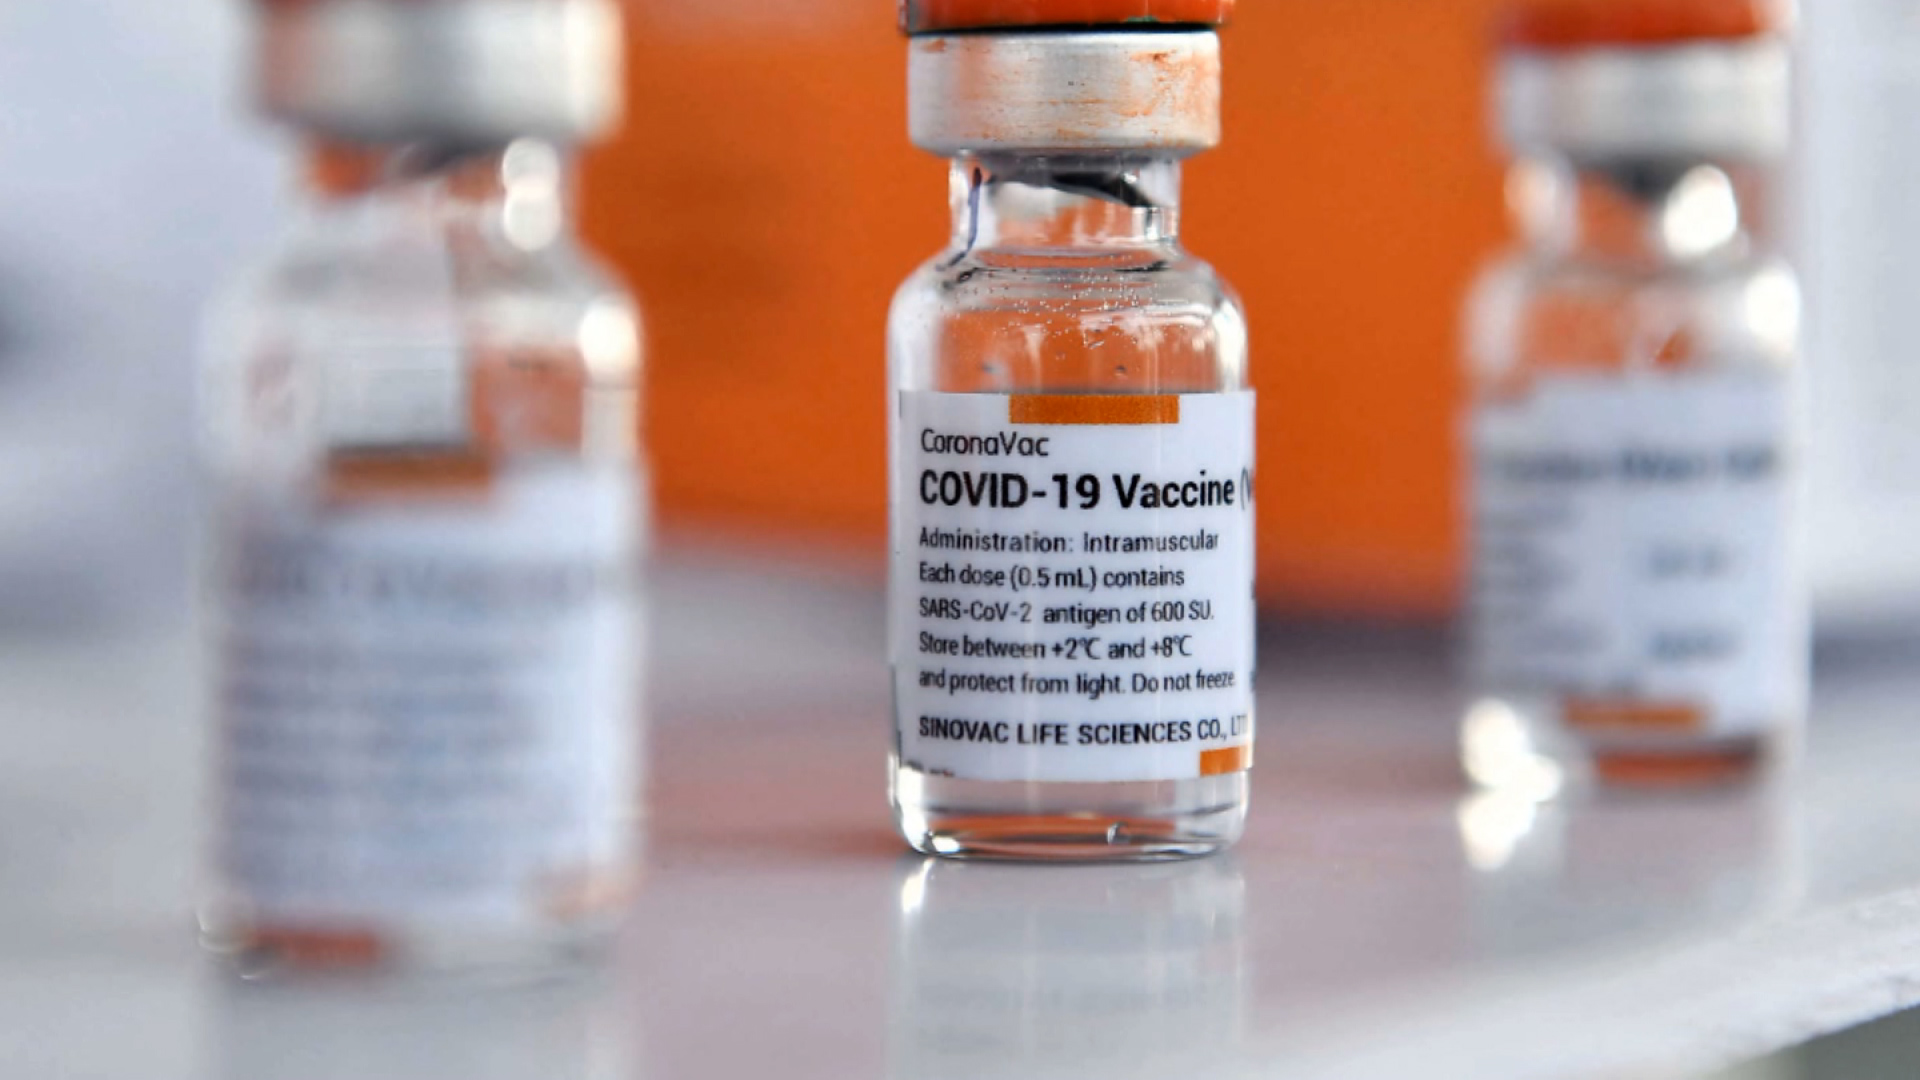 Aprobación de Coronavac por parte de ANVISA aceleraría llegada de vacunas desde Brasil, según DINAVISA